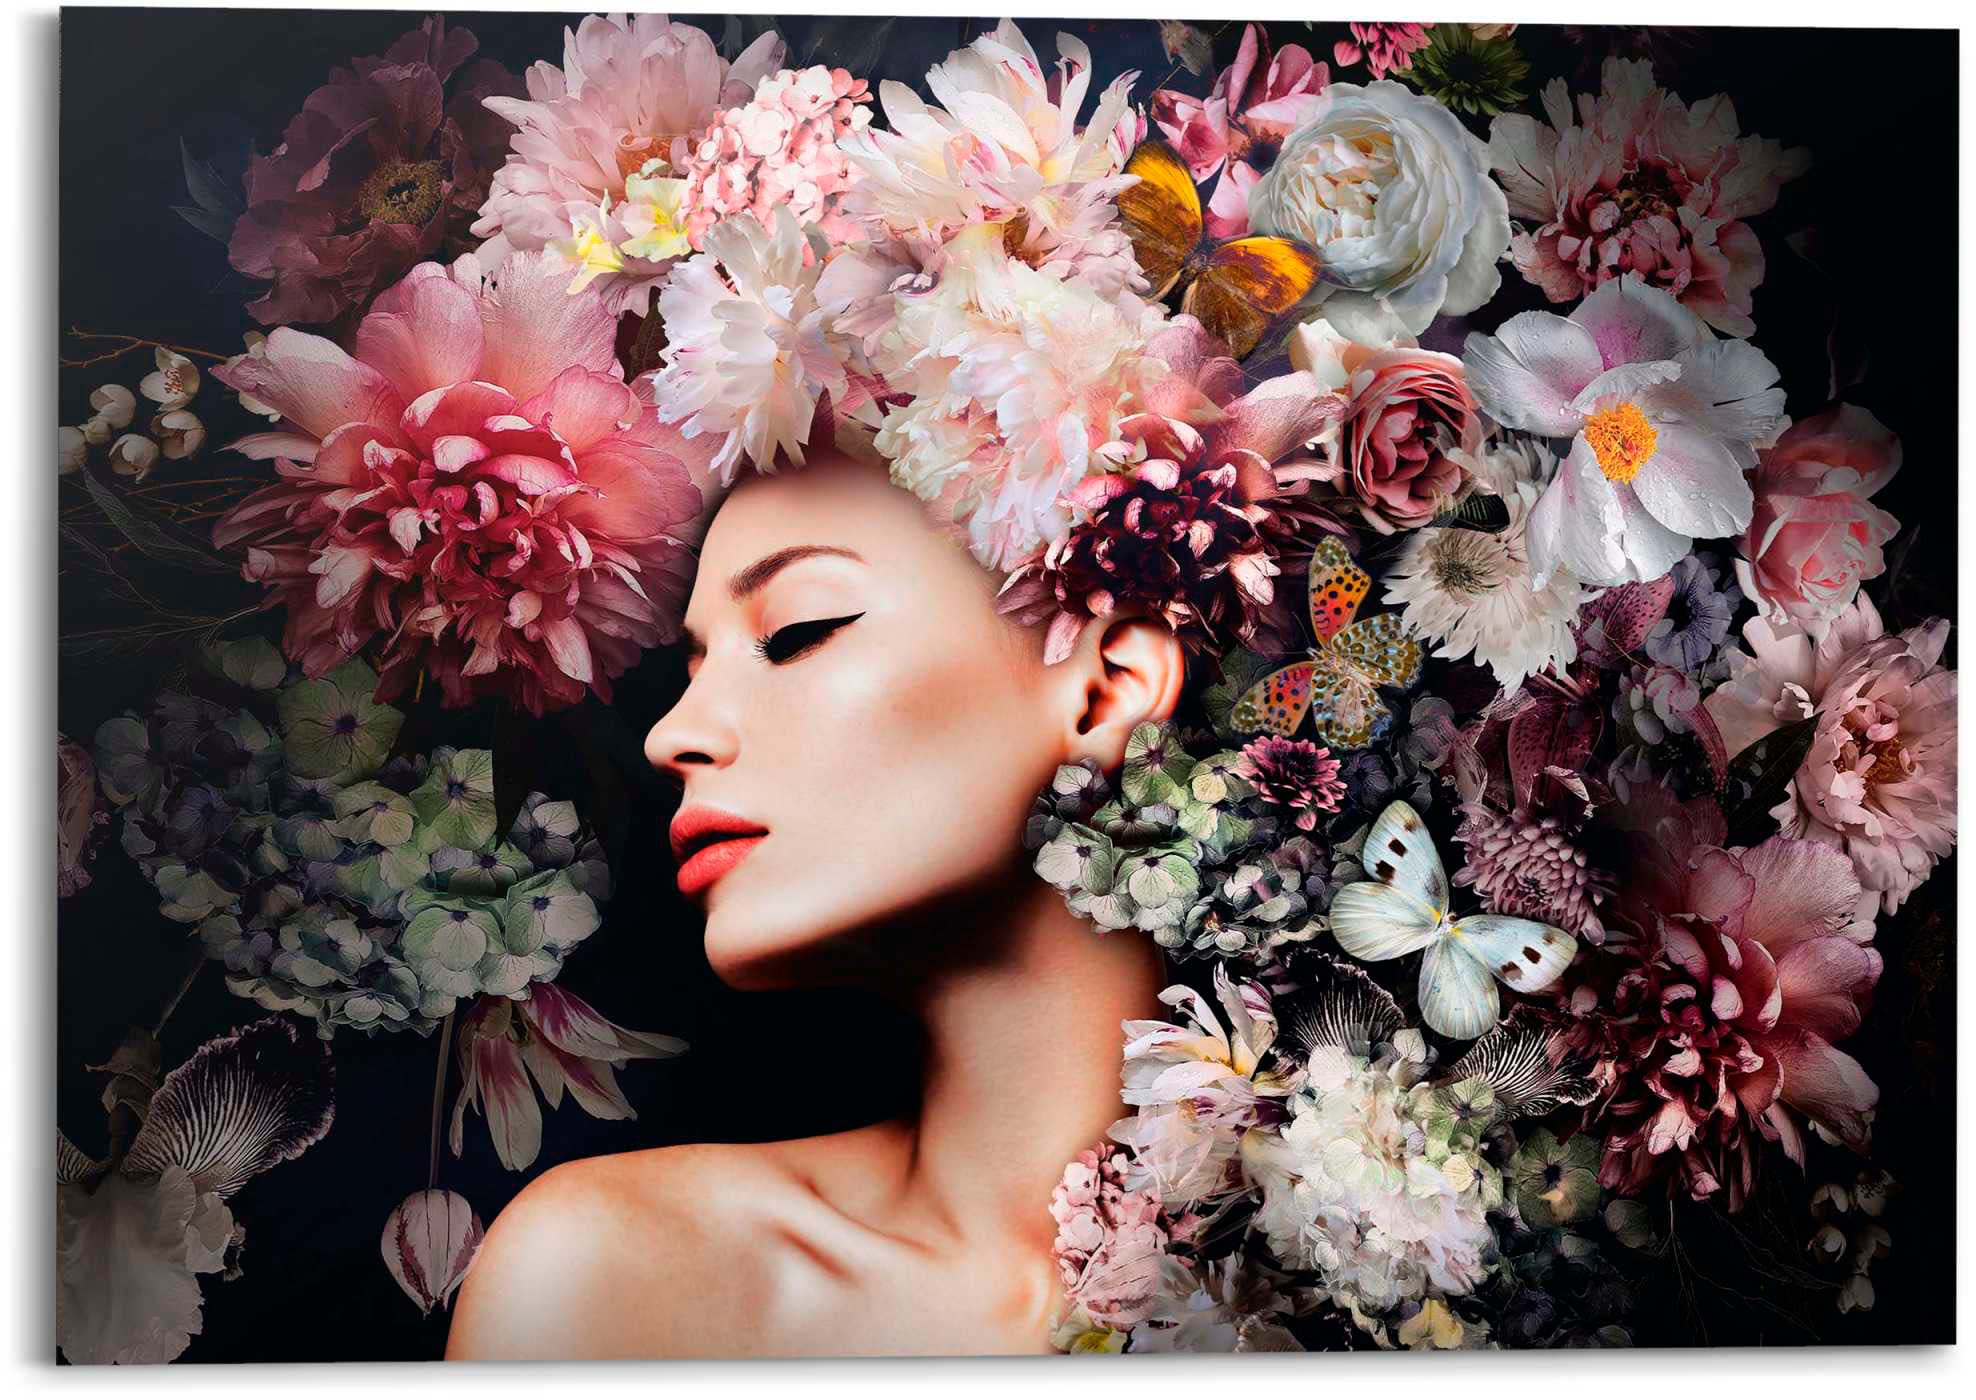 Deco-Panel »Frau mit Blumenhut«